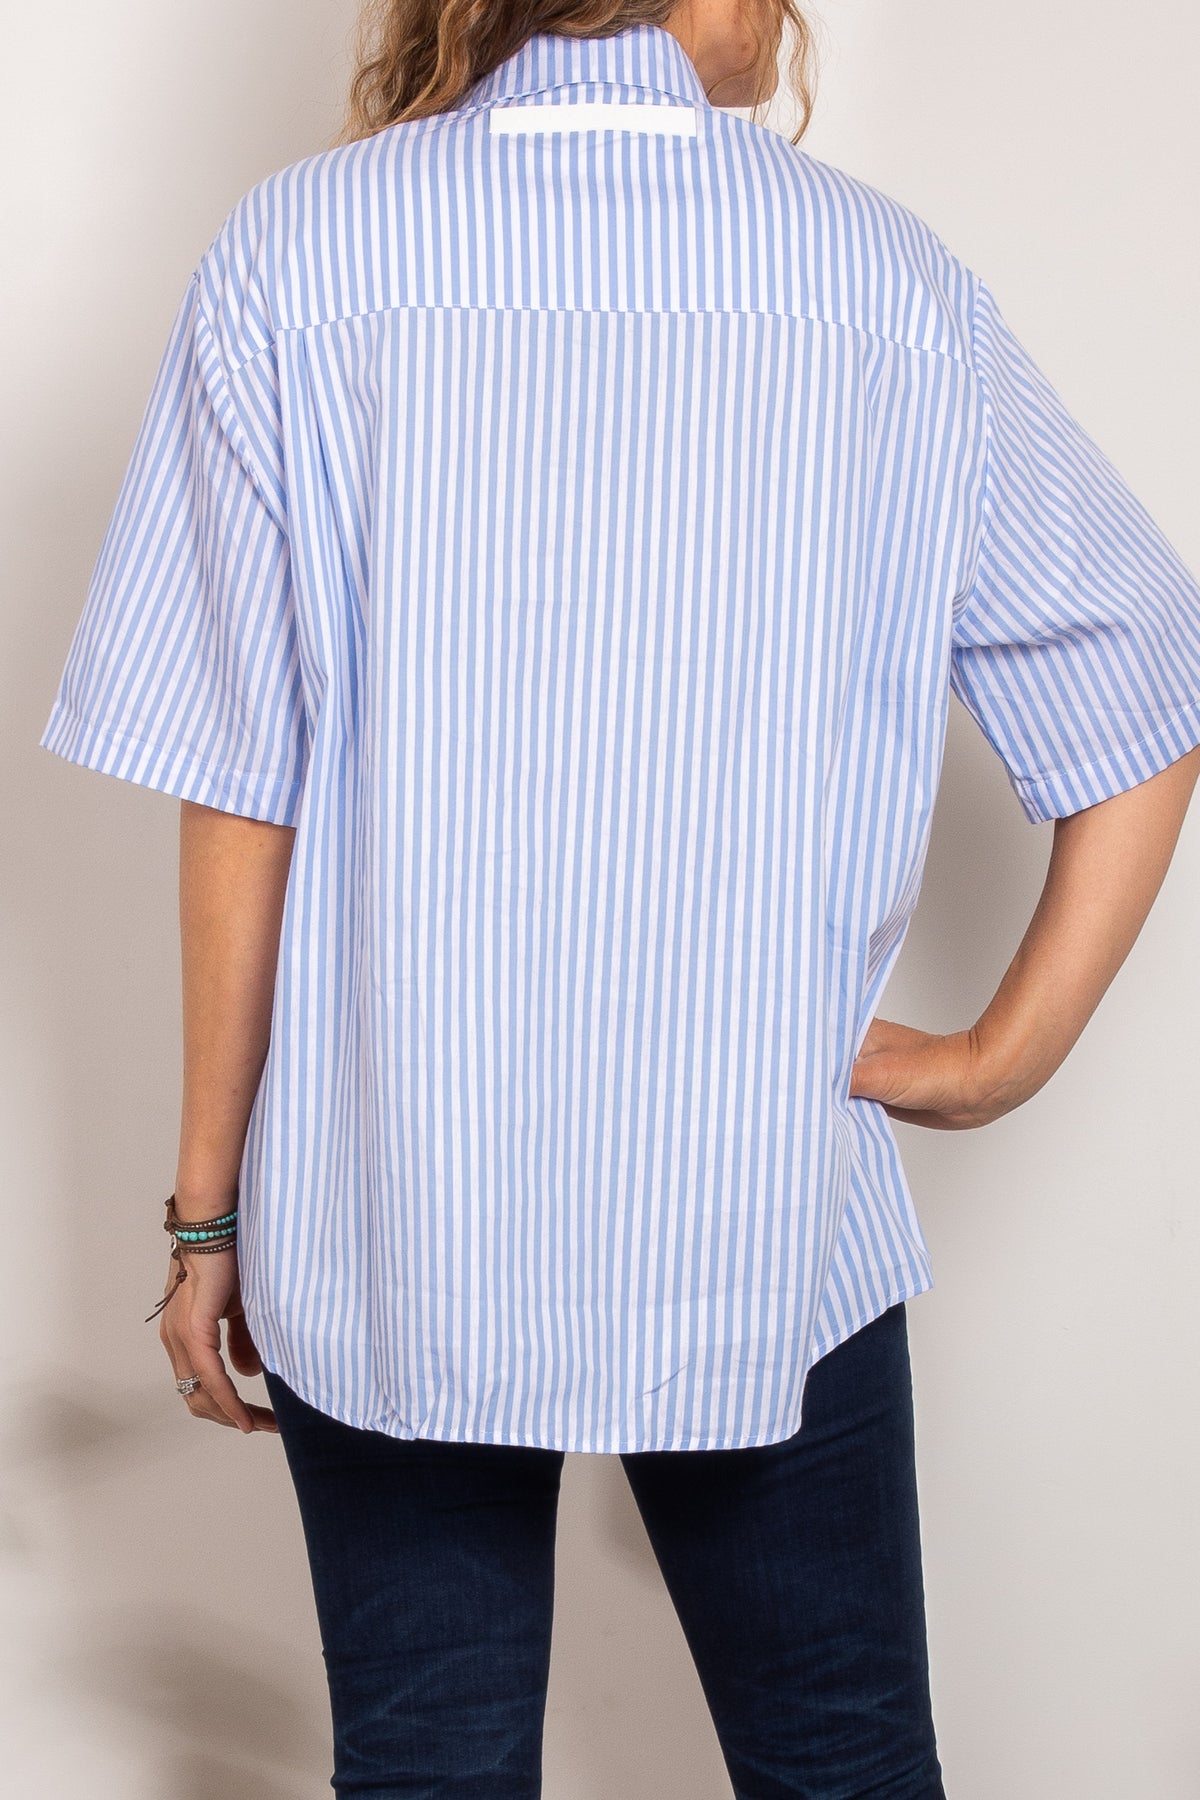 Alexandra Rogue Stripe Shirt